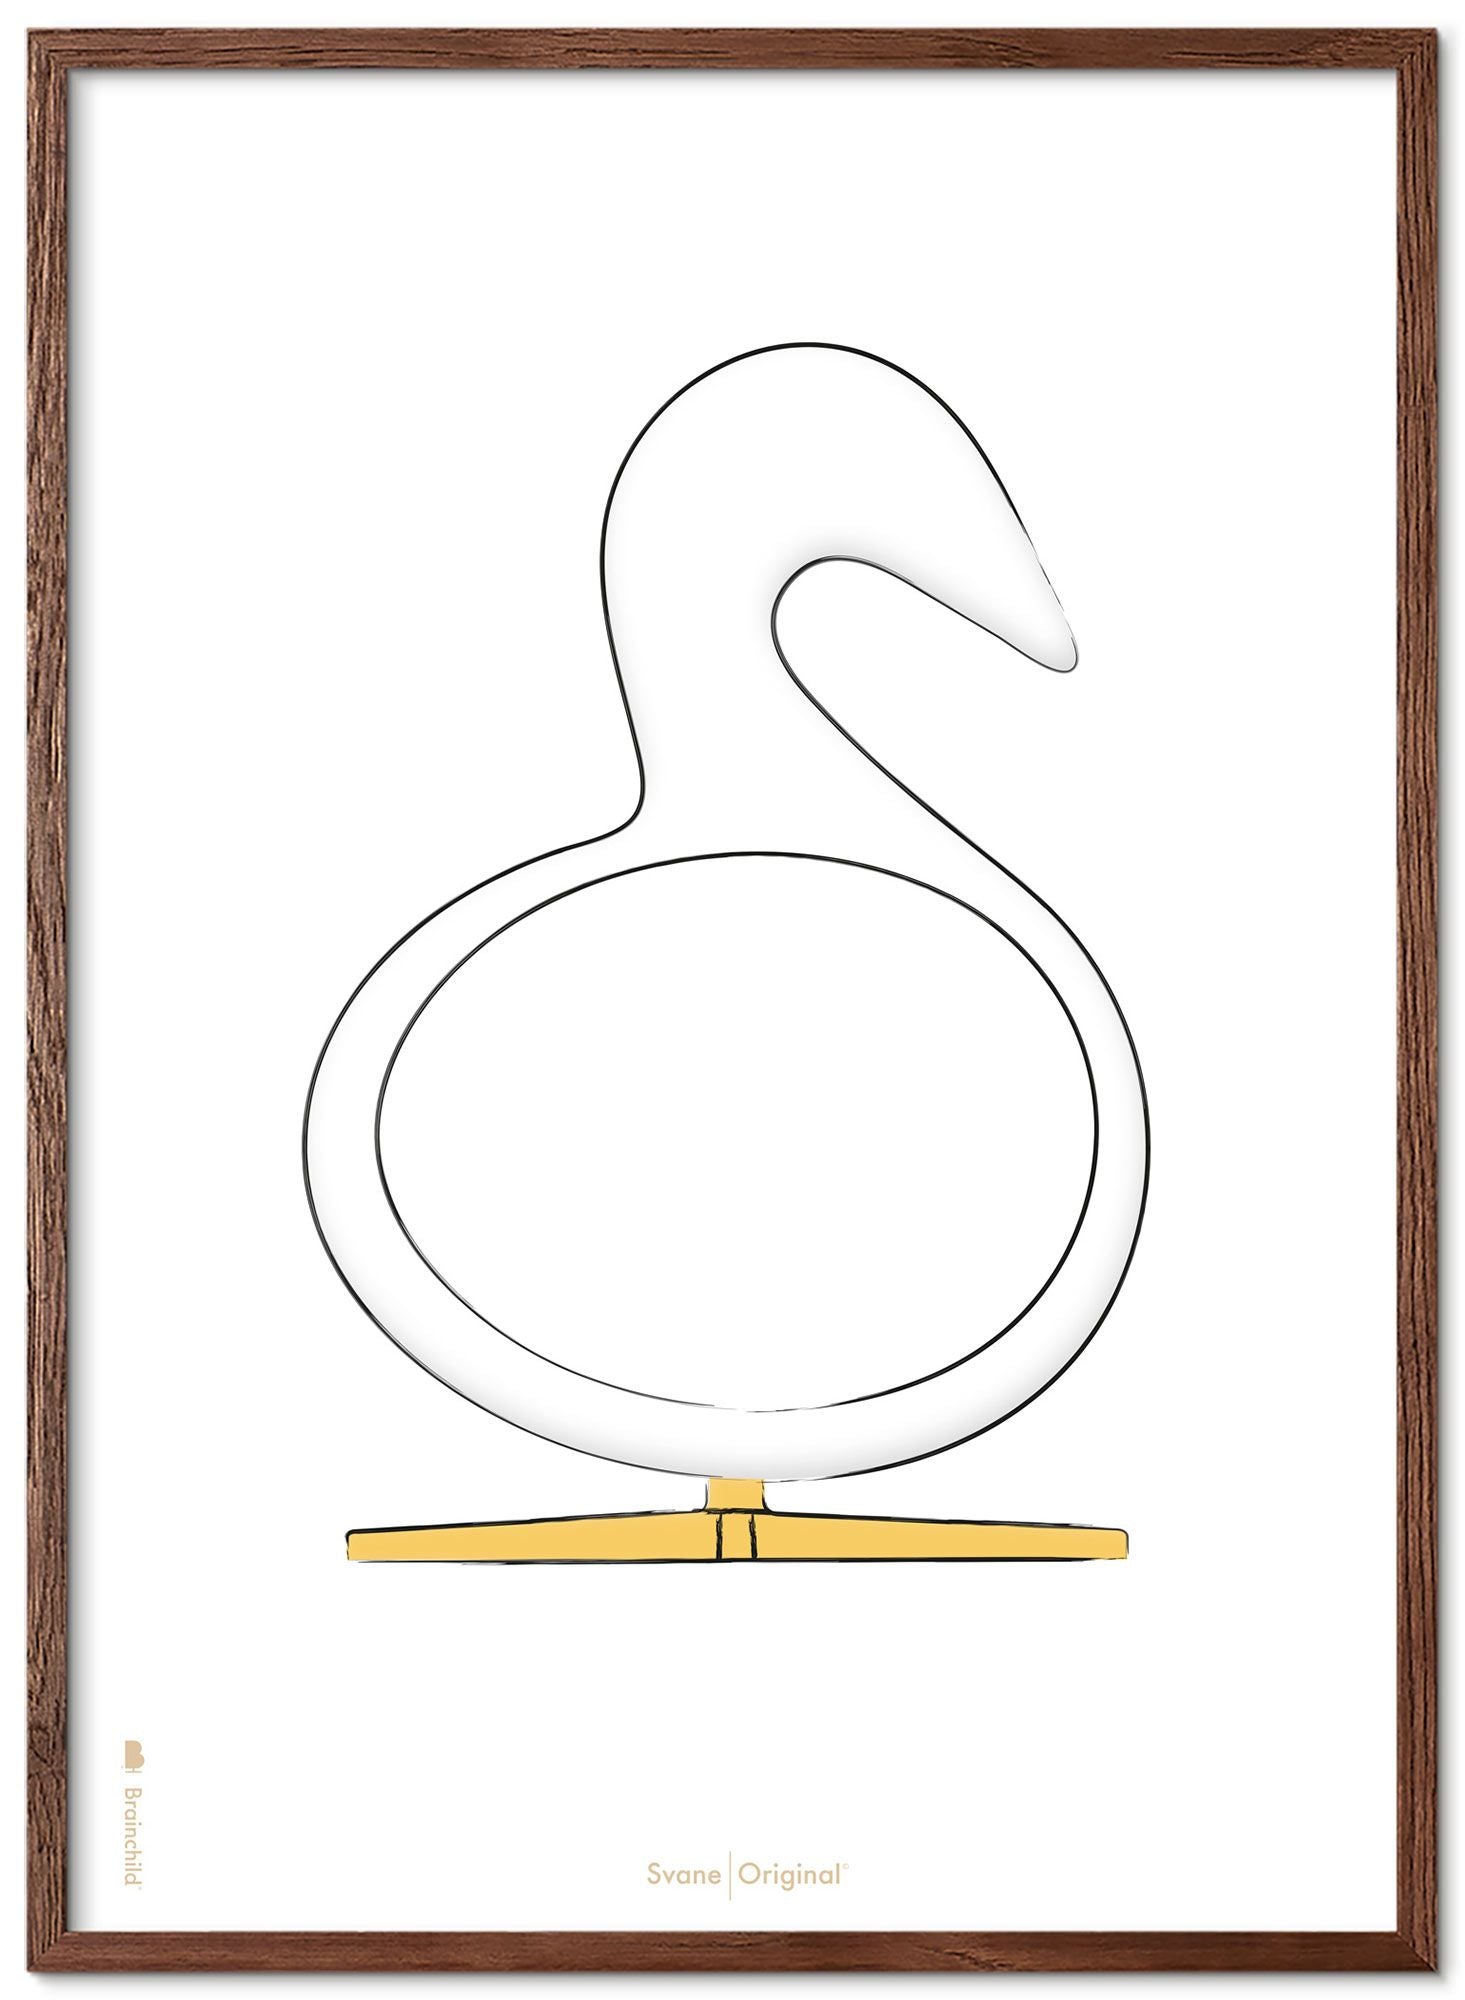 Brainchild Swan Design Sketch Affisch Frame Made of Dark Wood 50x70 cm, vit bakgrund